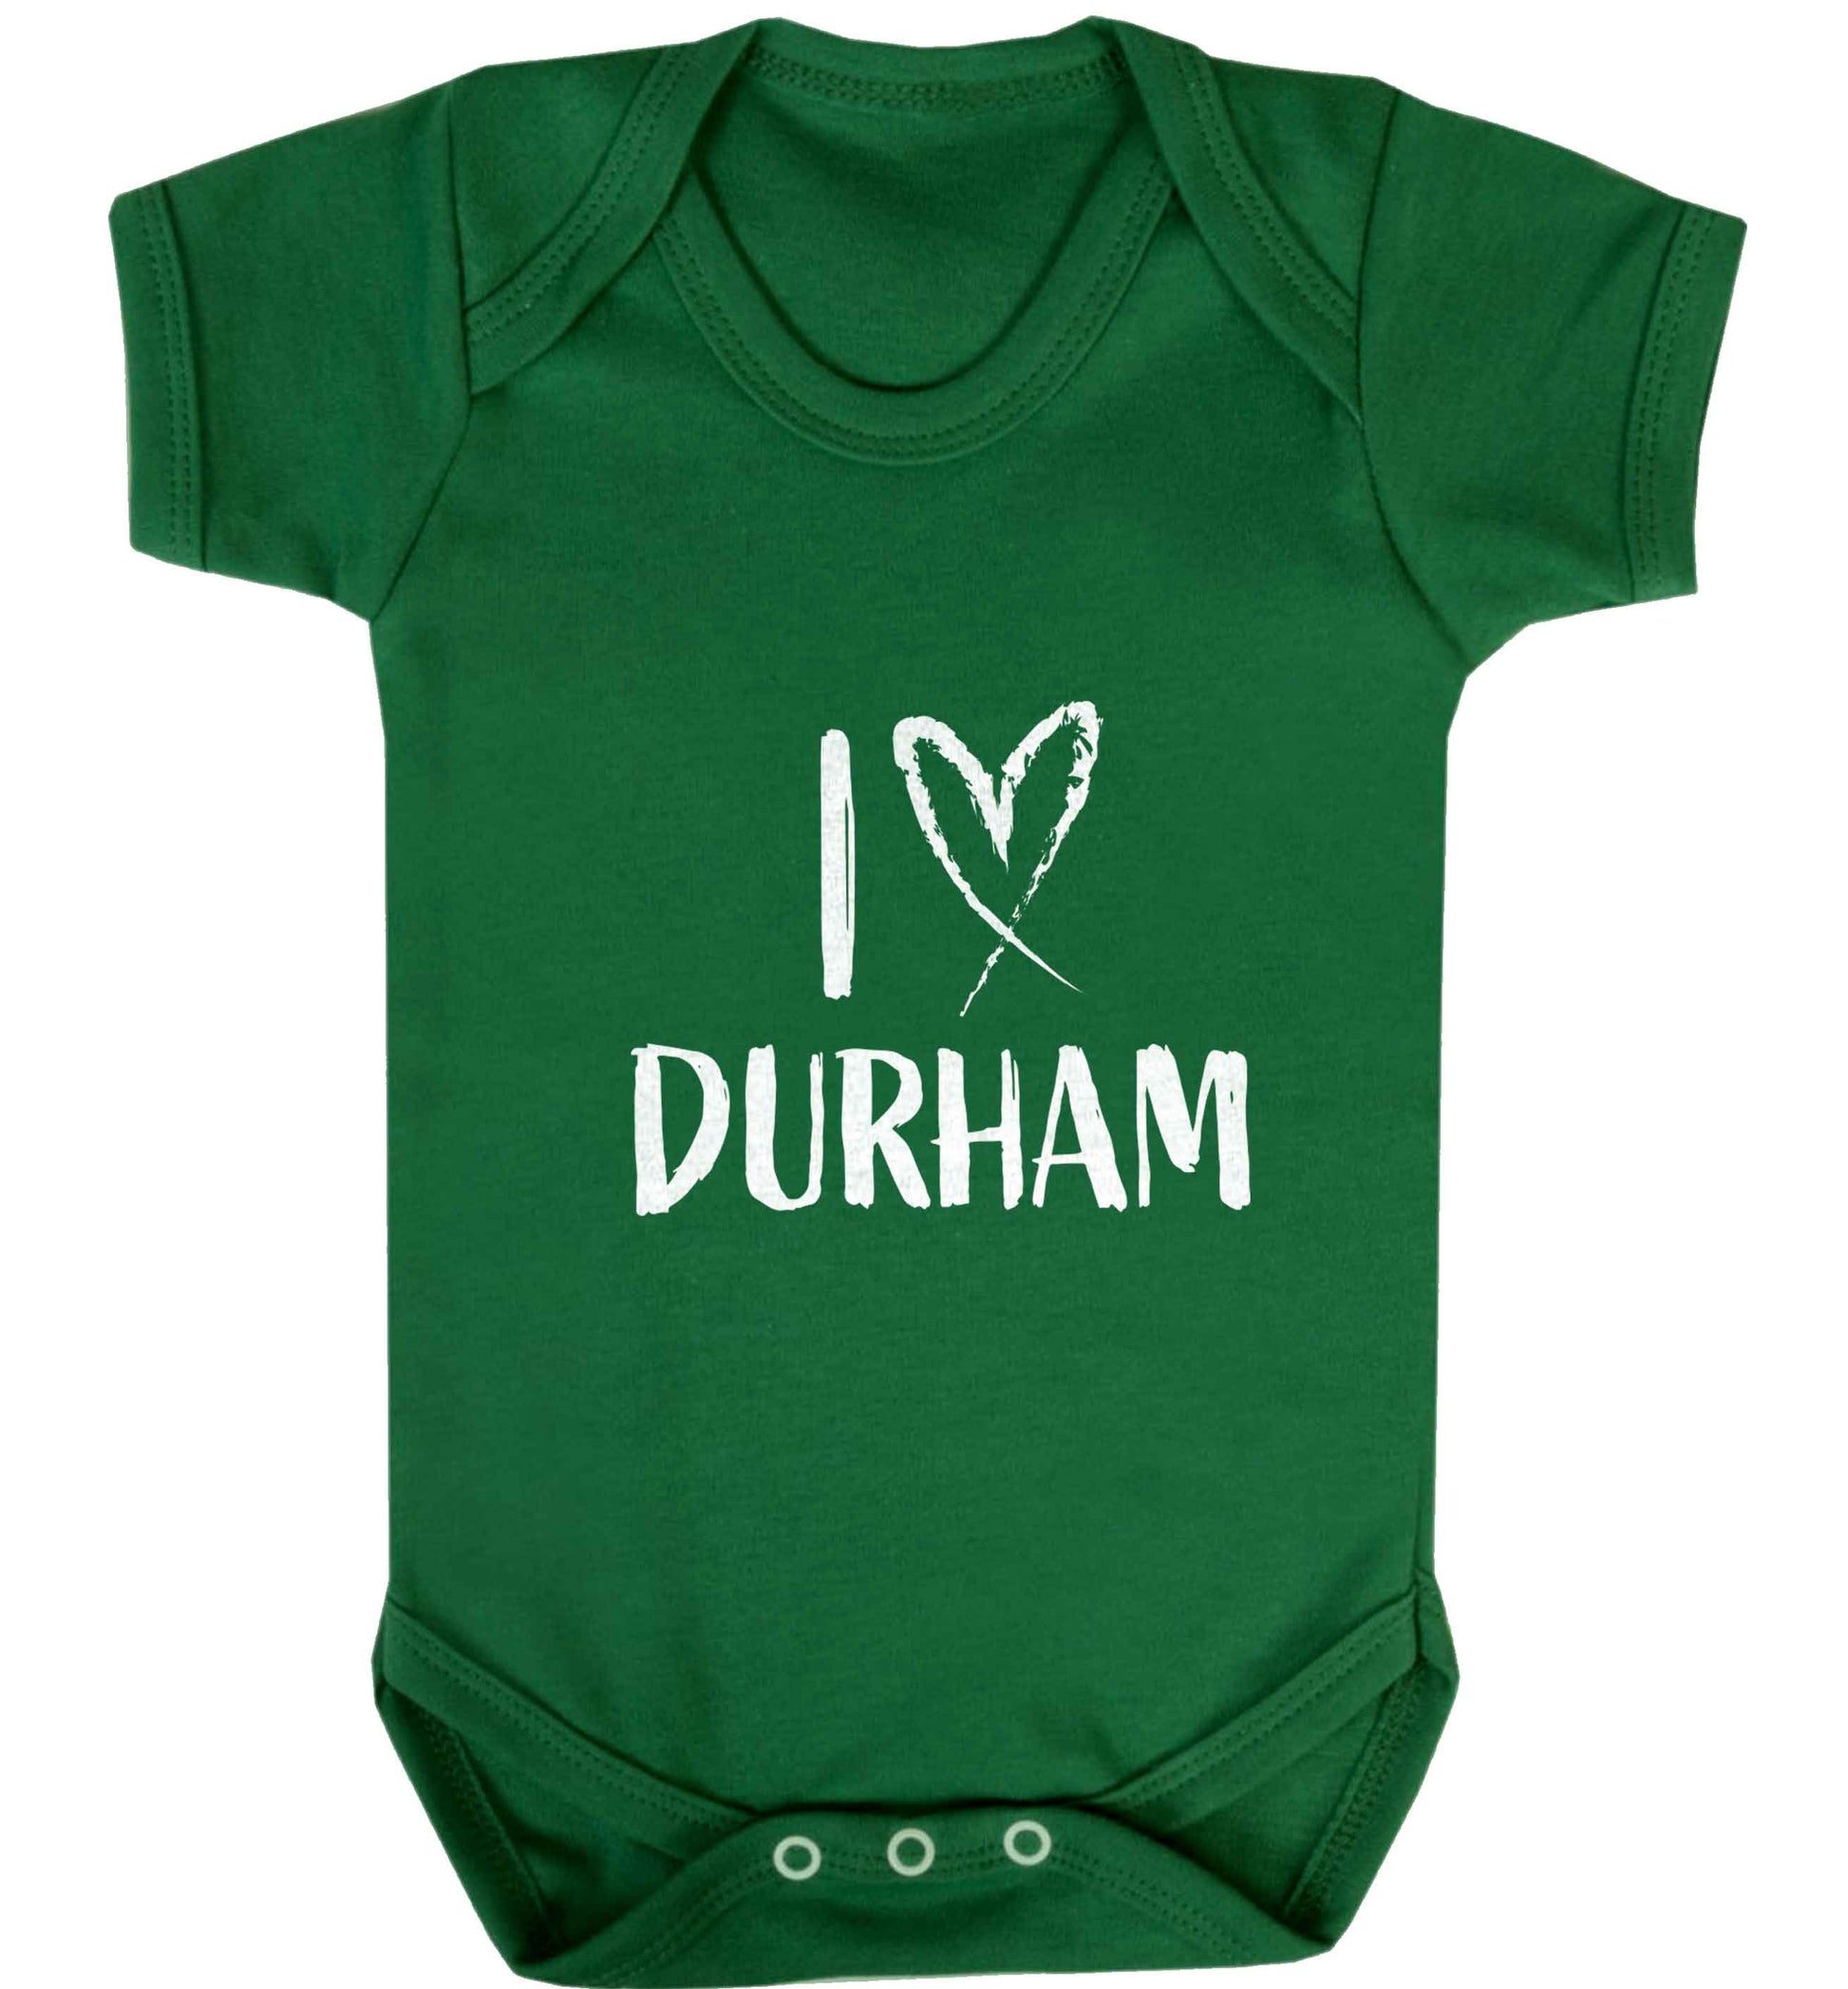 I love Durham baby vest green 18-24 months